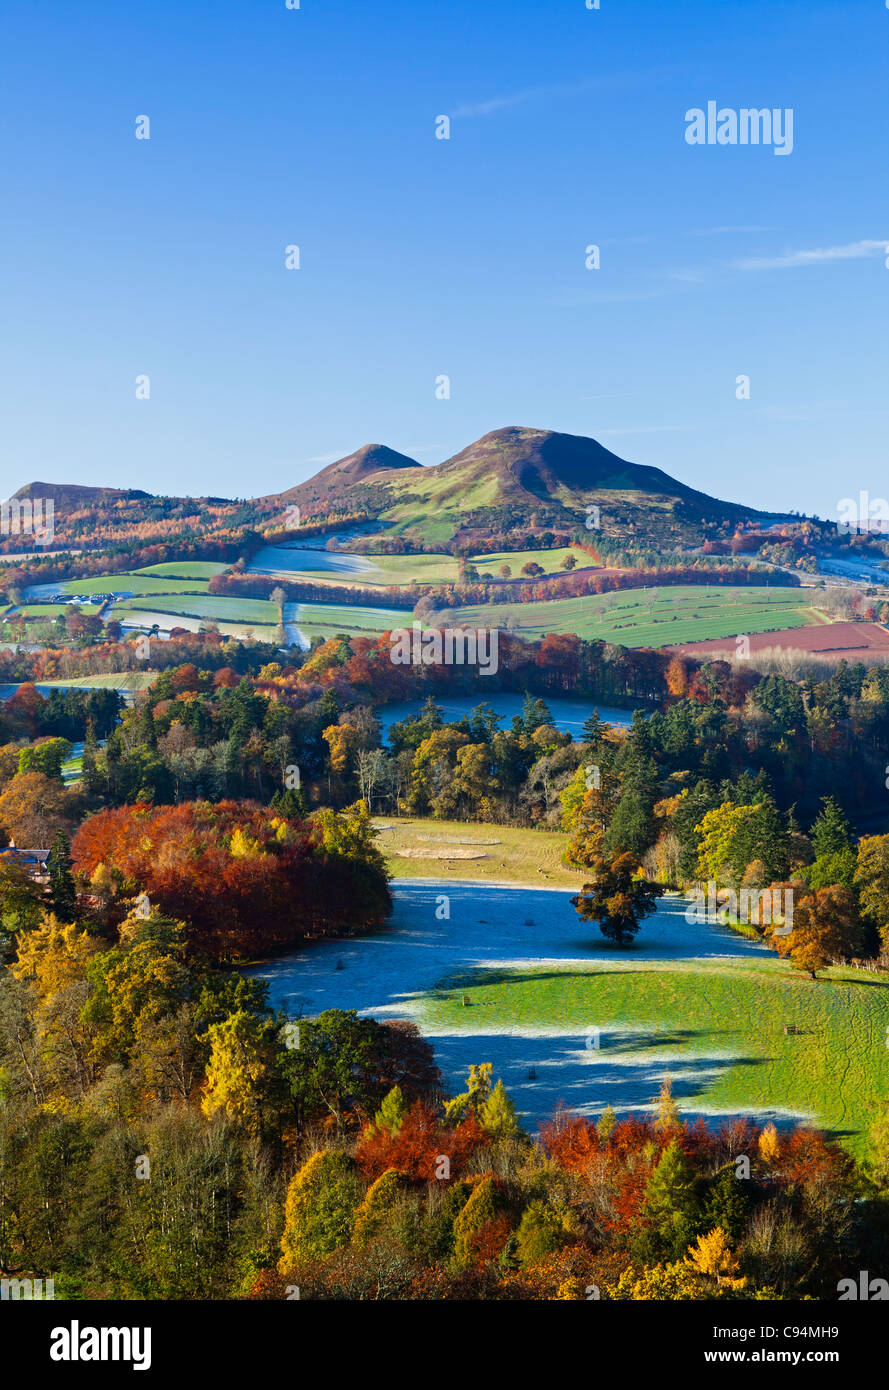 Scott's View en automne/hiver à la recherche de l'Eildon Hills dans la région des Scottish Borders en Écosse au Royaume-Uni, en Europe Banque D'Images